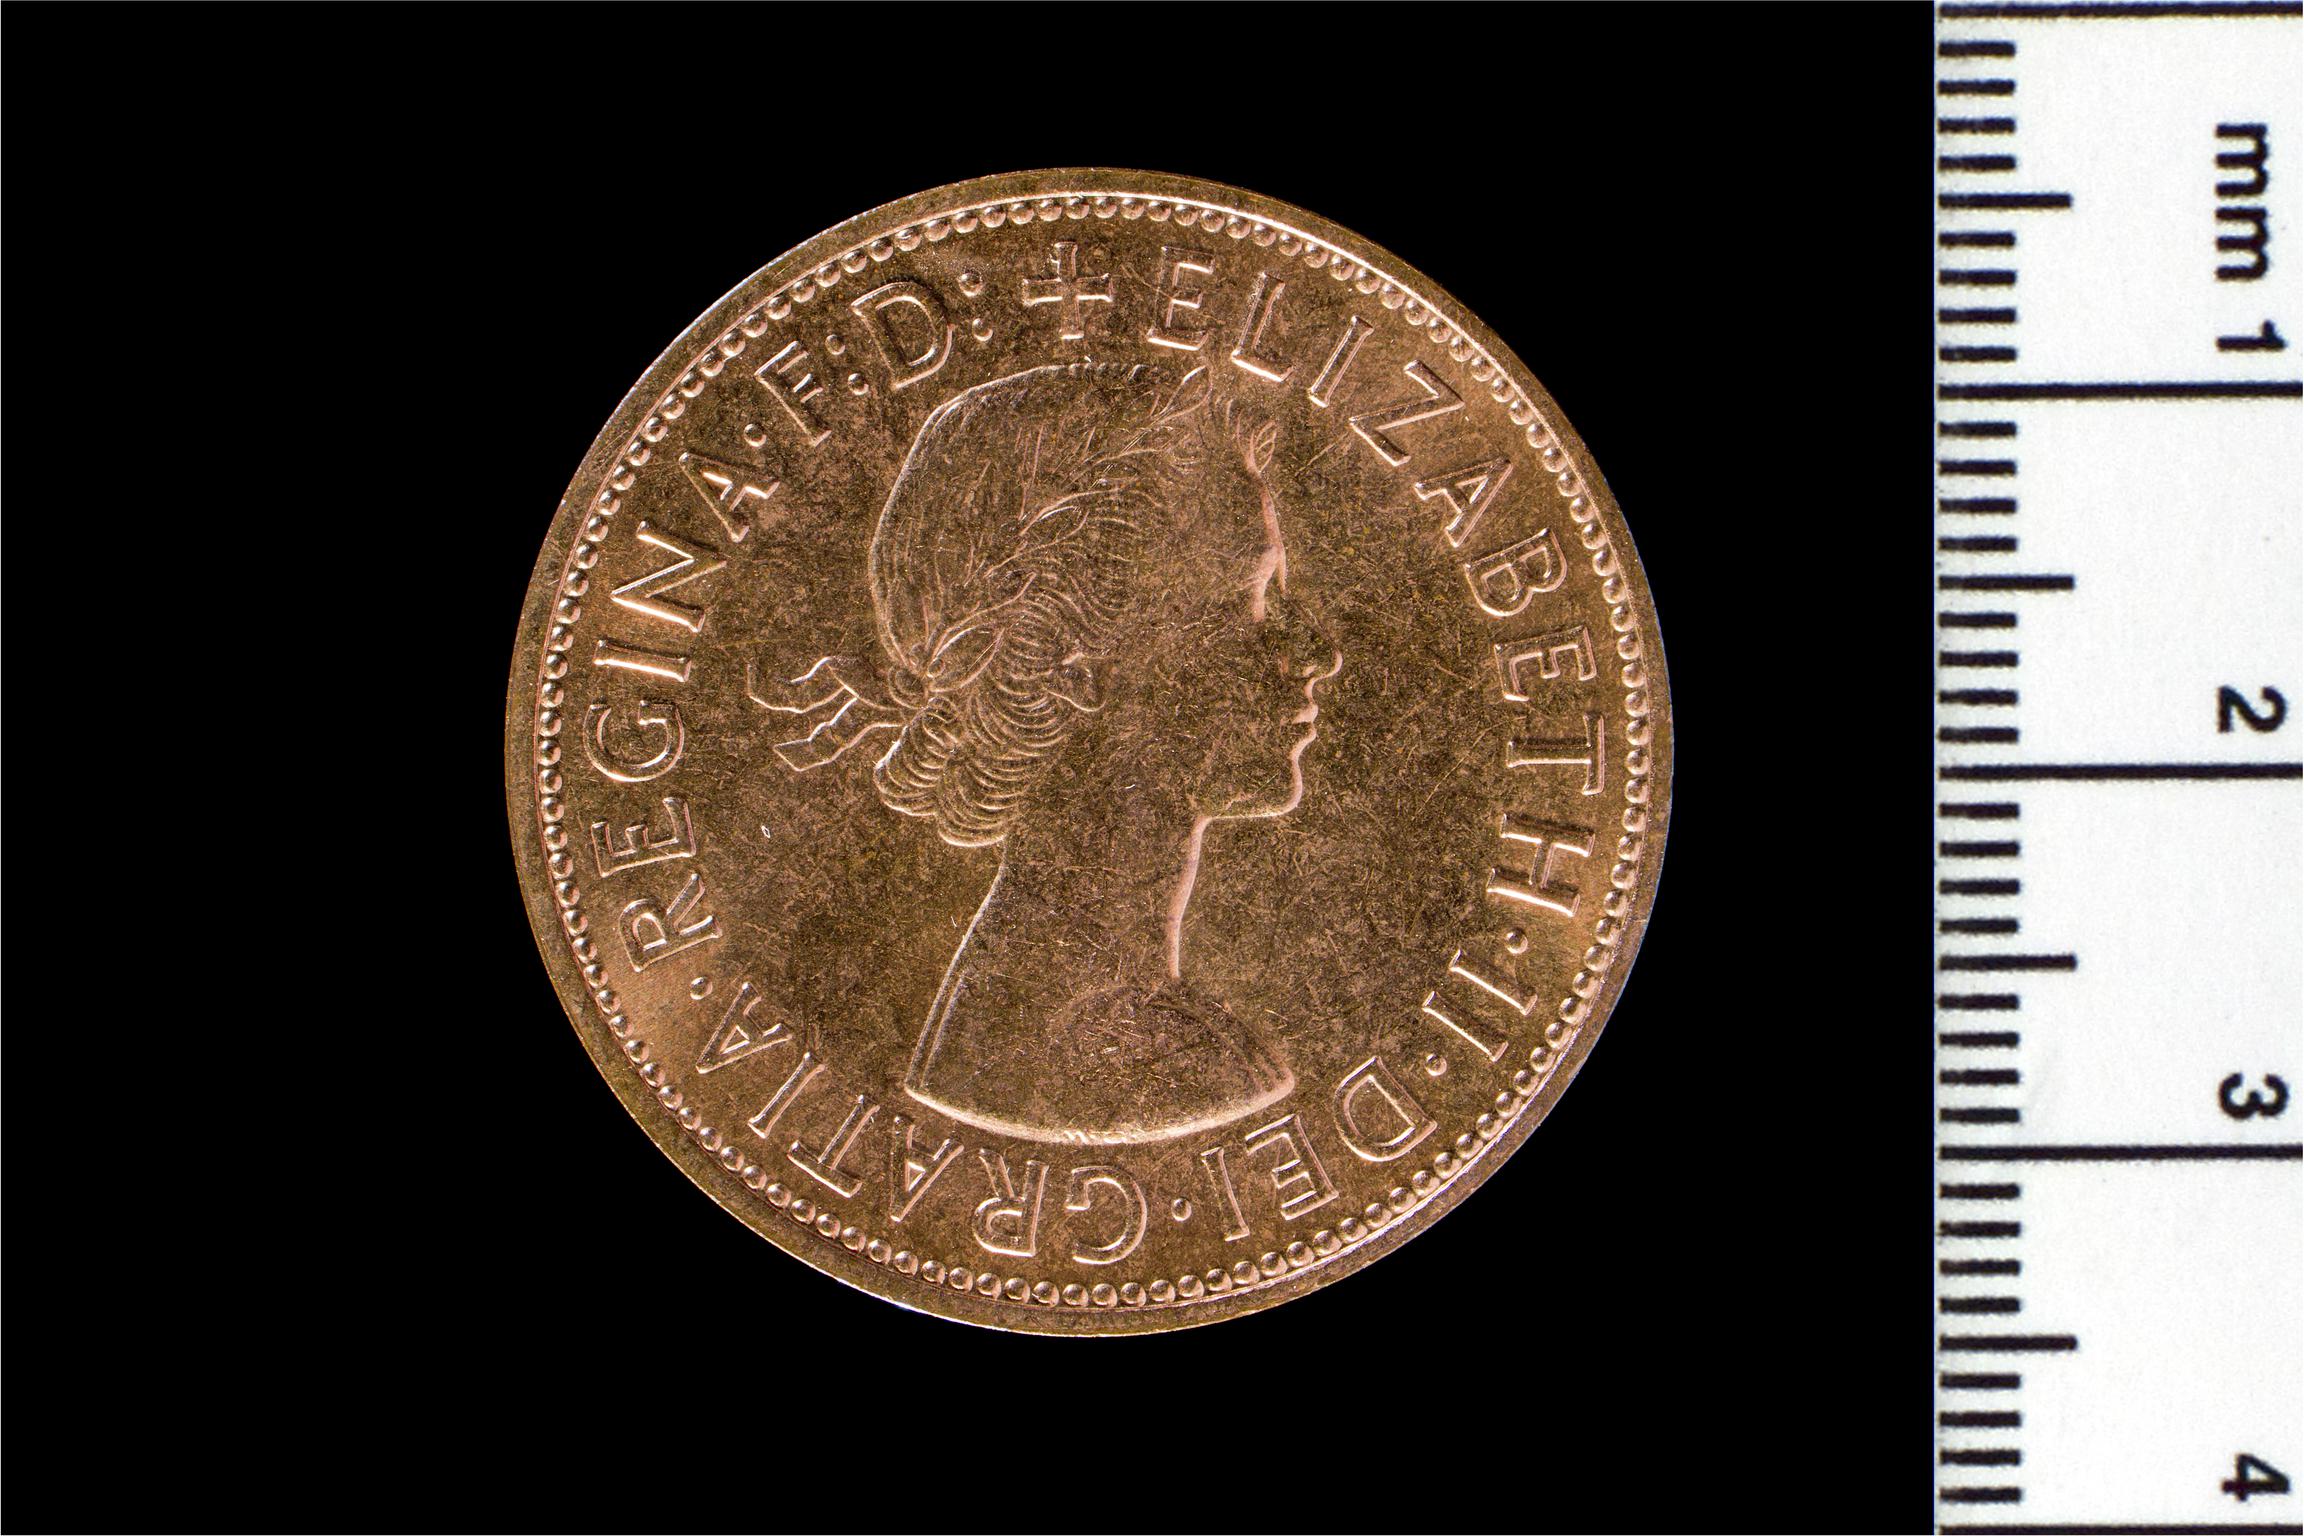 Elizabeth II penny